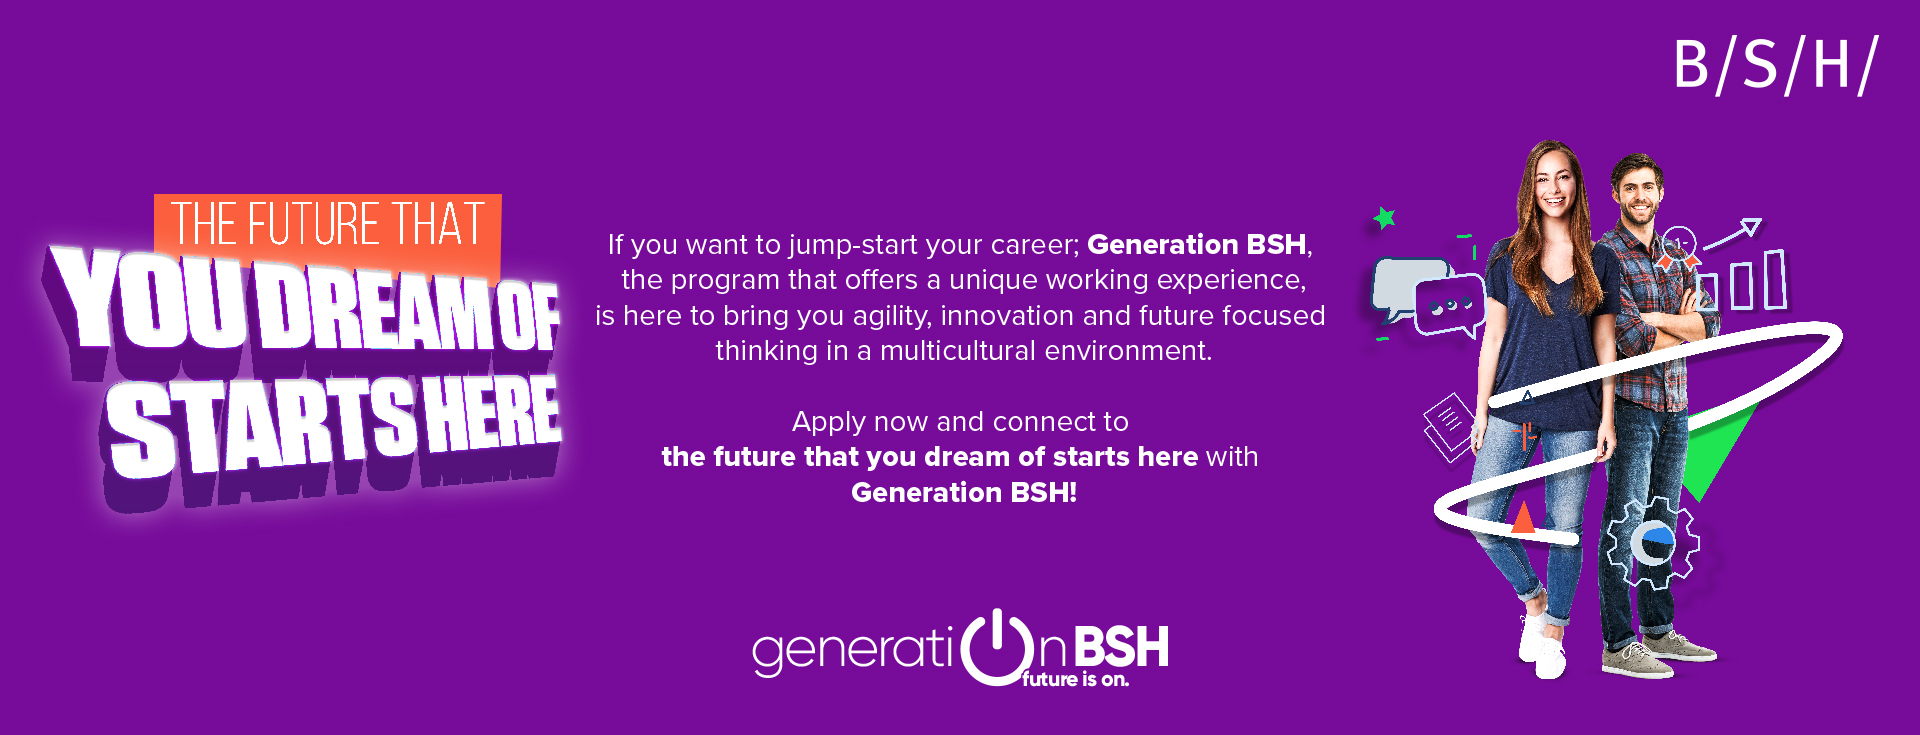 Generation BSH